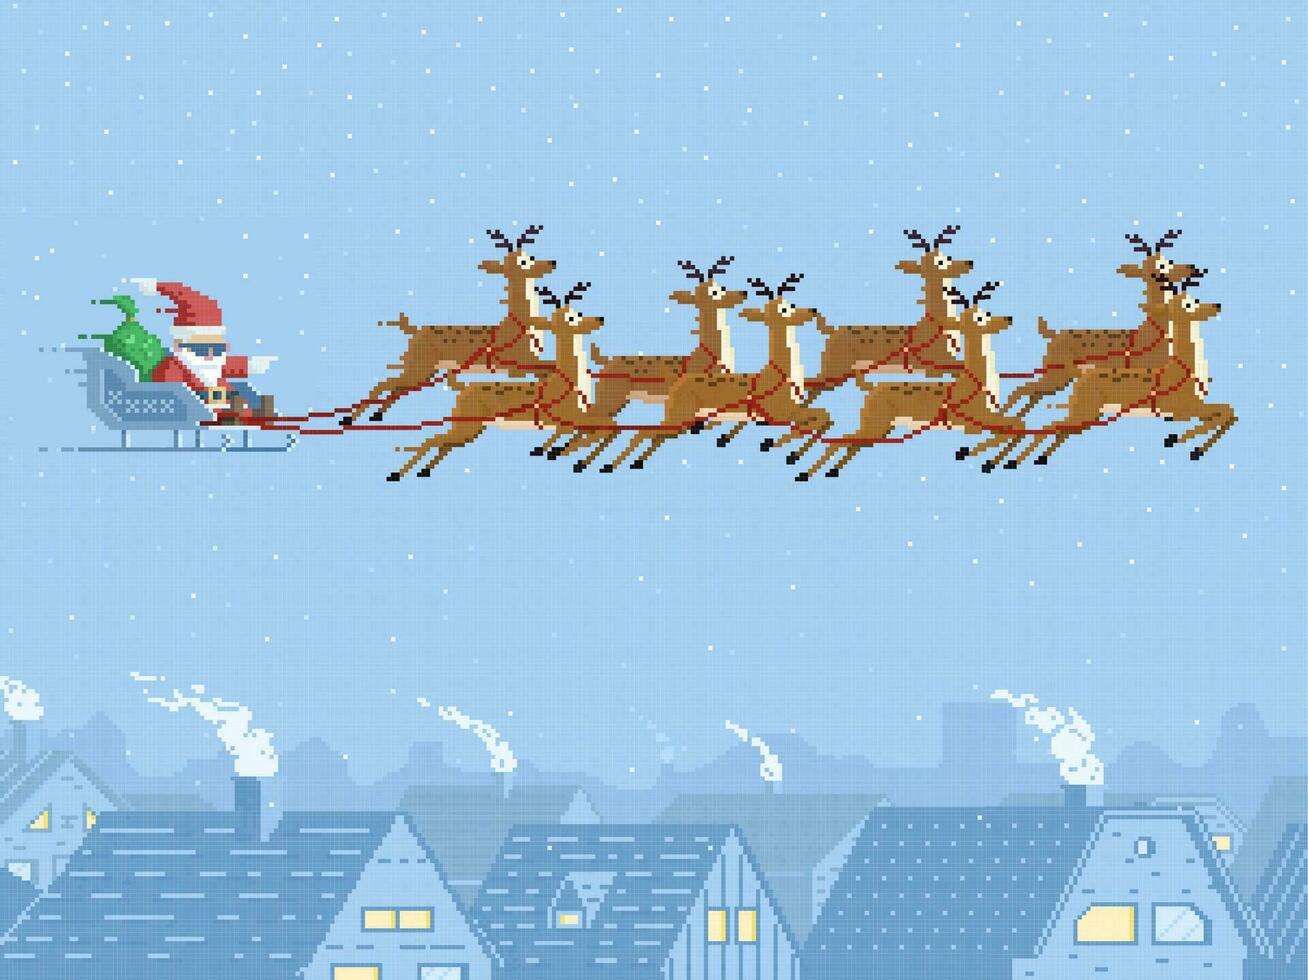 Pixel Santa on sleigh, reindeer in sky, Christmas vector